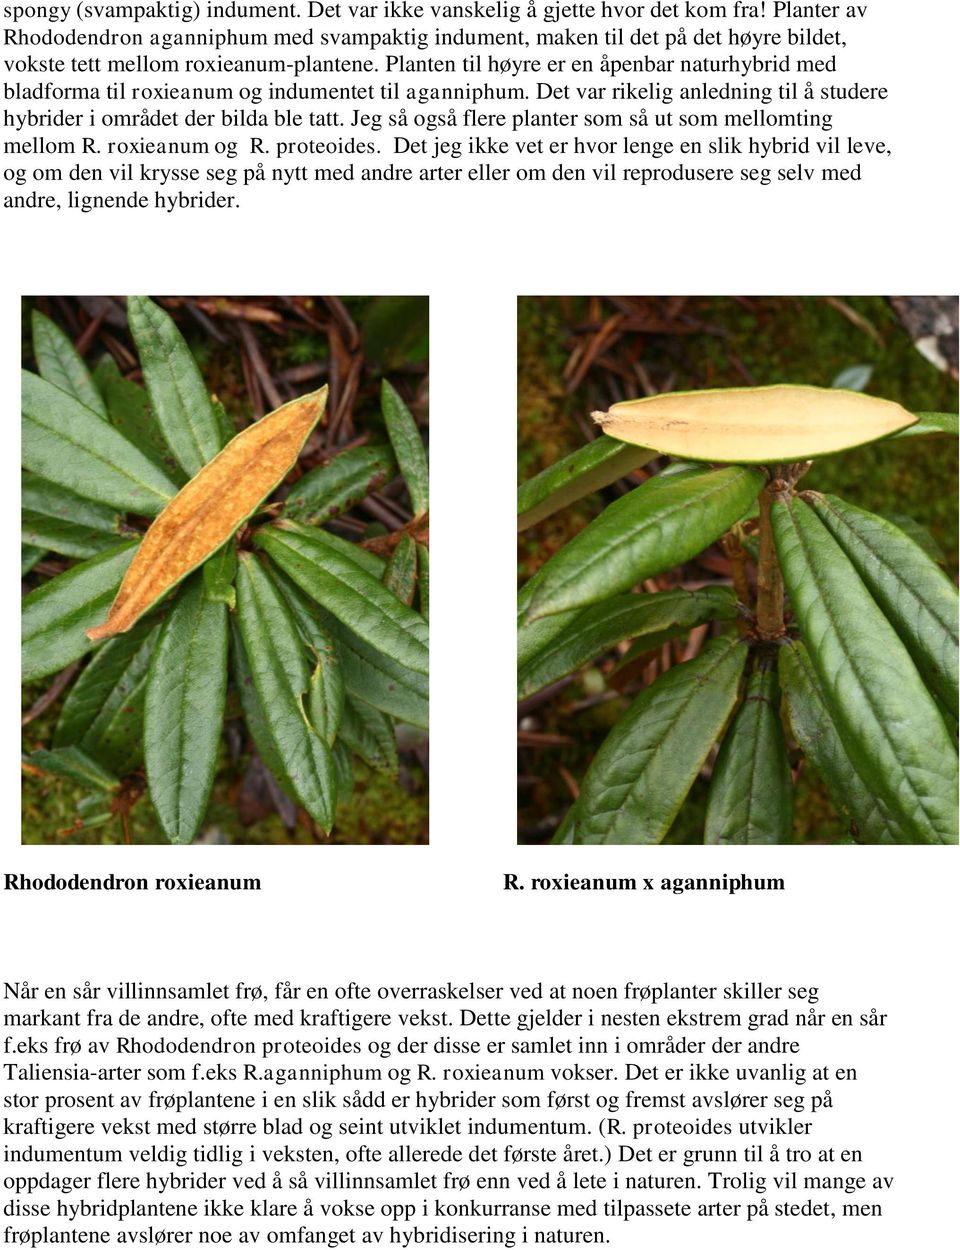 Planten til høyre er en åpenbar naturhybrid med bladforma til roxieanum og indumentet til aganniphum. Det var rikelig anledning til å studere hybrider i området der bilda ble tatt.